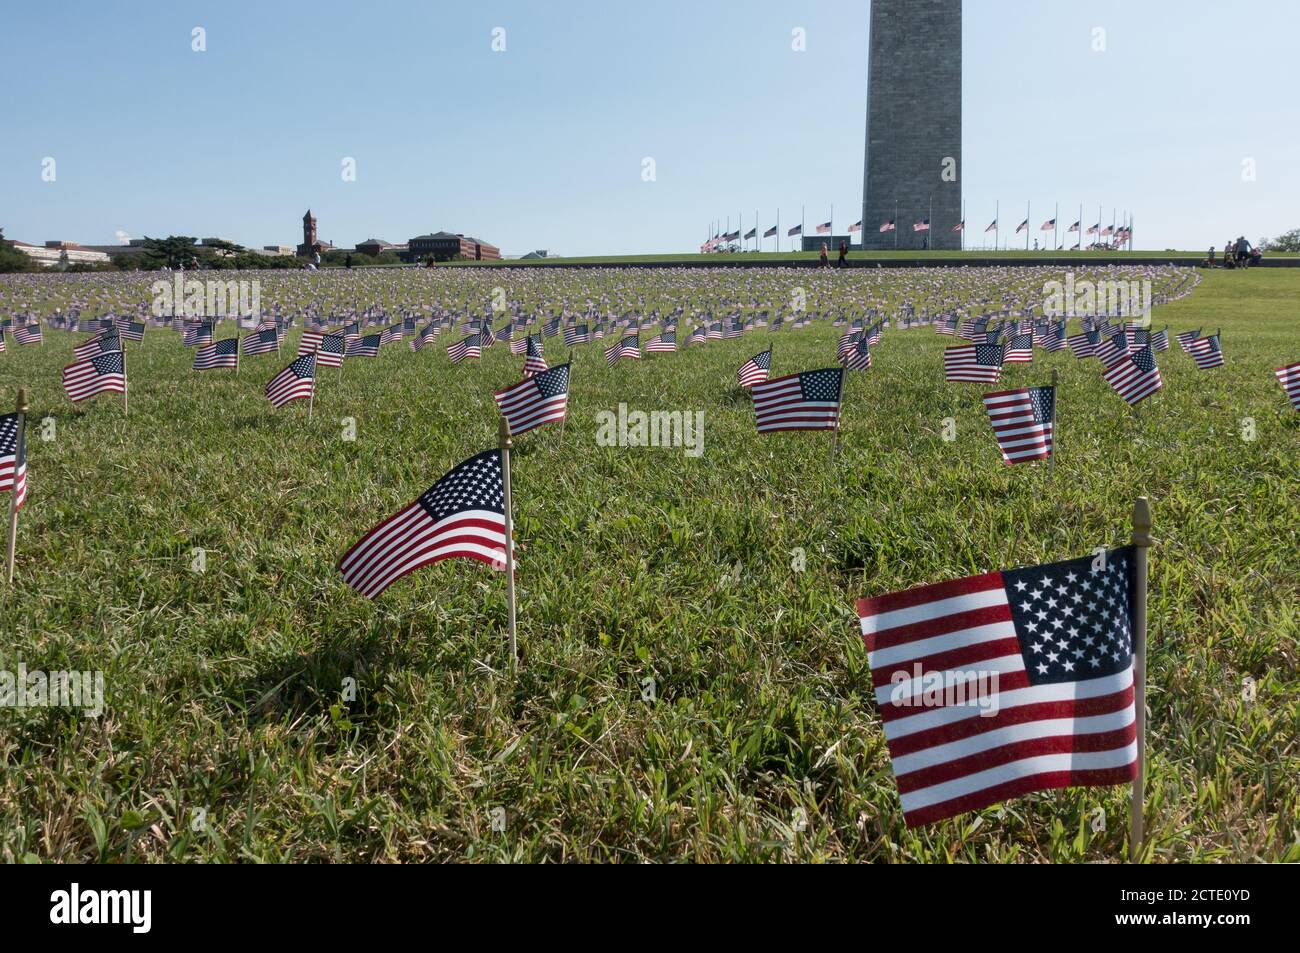 22 de septiembre de 2020: Algunas de las 20,000 banderas estadounidenses colocadas en los terrenos del Monumento a Washington, representando las 200,000 muertes debidas a Covid-19, un umbral que acaba de pasar. Las banderas fueron colocadas por el proyecto Conmemorativo del COVID, un grupo local de Washington, DC. Foto de stock